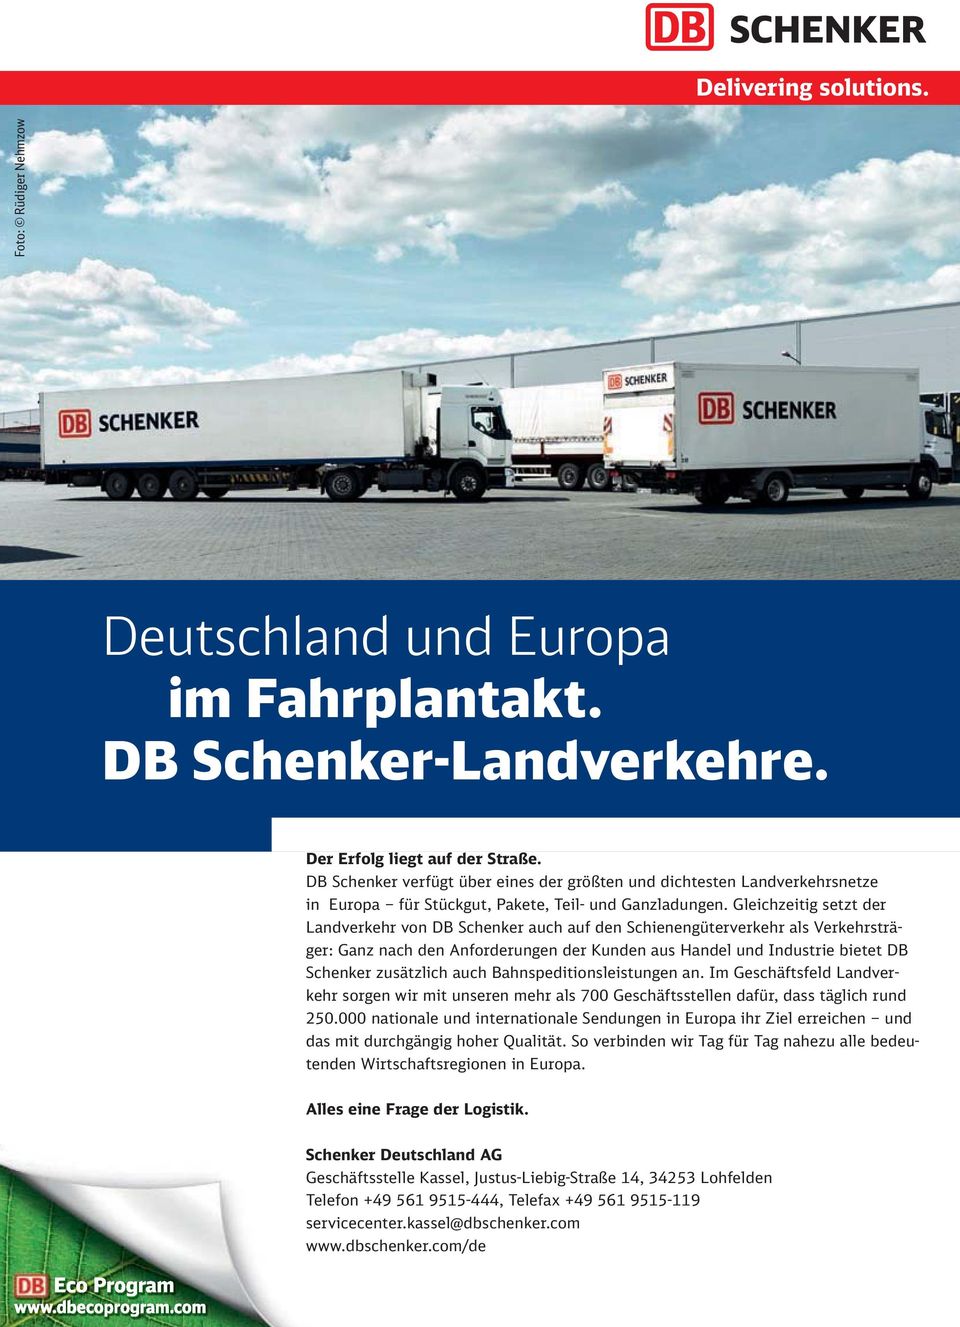 Gleichzeitig setzt der Landverkehr von DB Schenker auch auf den Schienengüterverkehr als Verkehrsträger: Ganz nach den Anforderungen der Kunden aus Handel und Industrie bietet DB Schenker zusätzlich